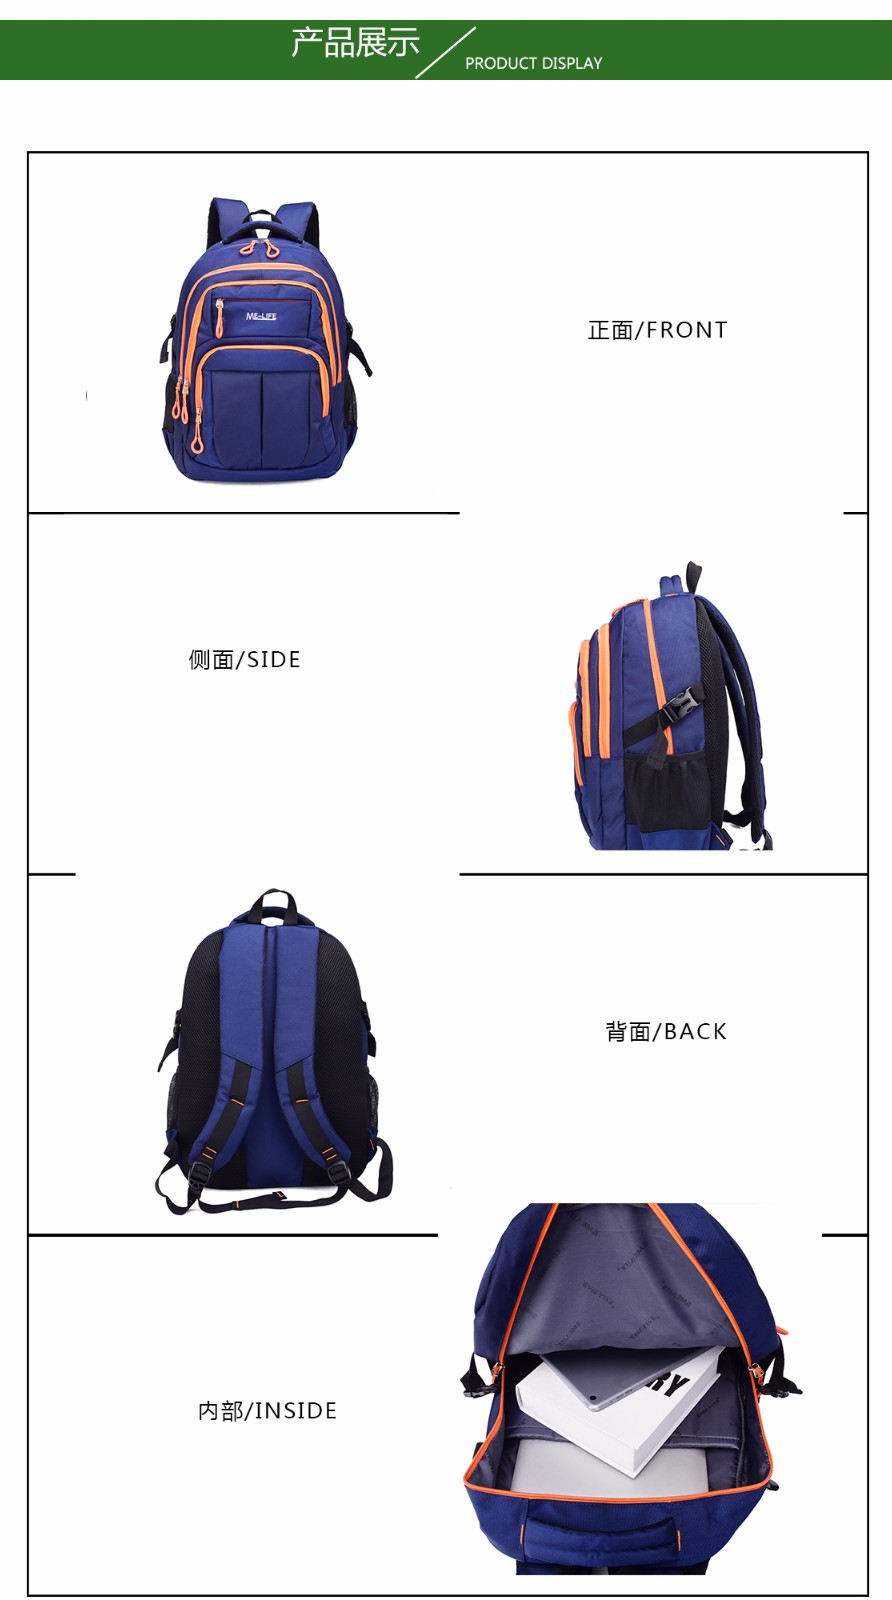 Outdoors backpack.jpg